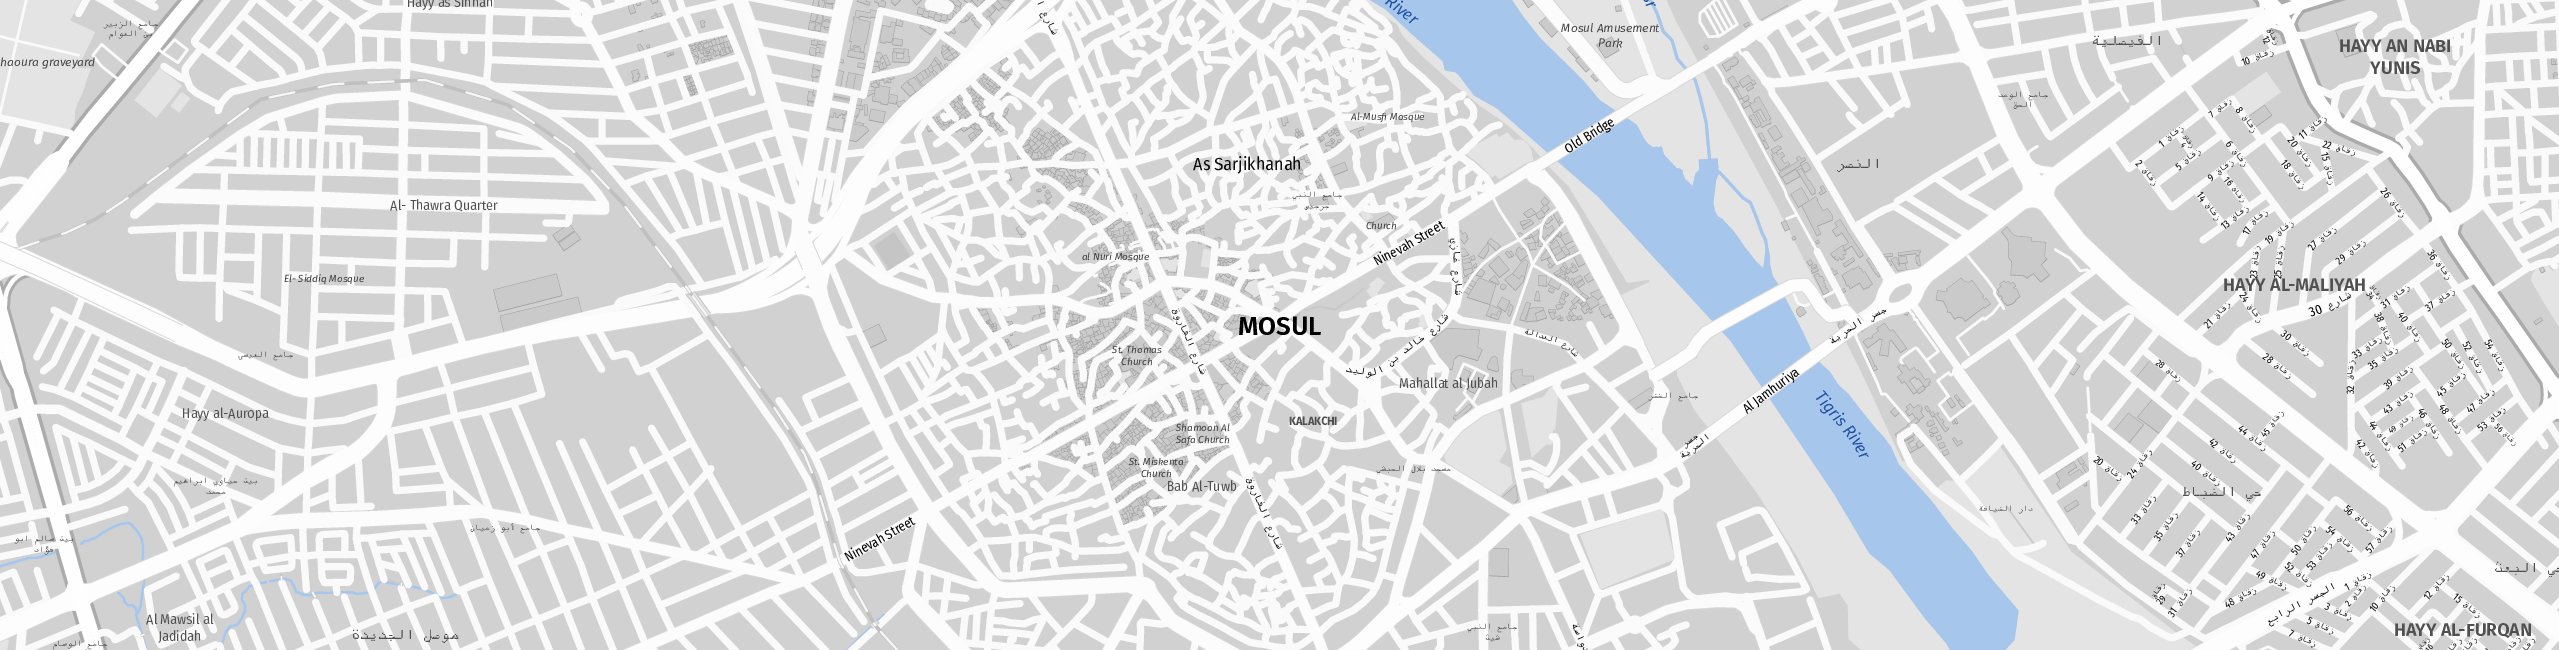 Stadtplan Mosul zum Downloaden.